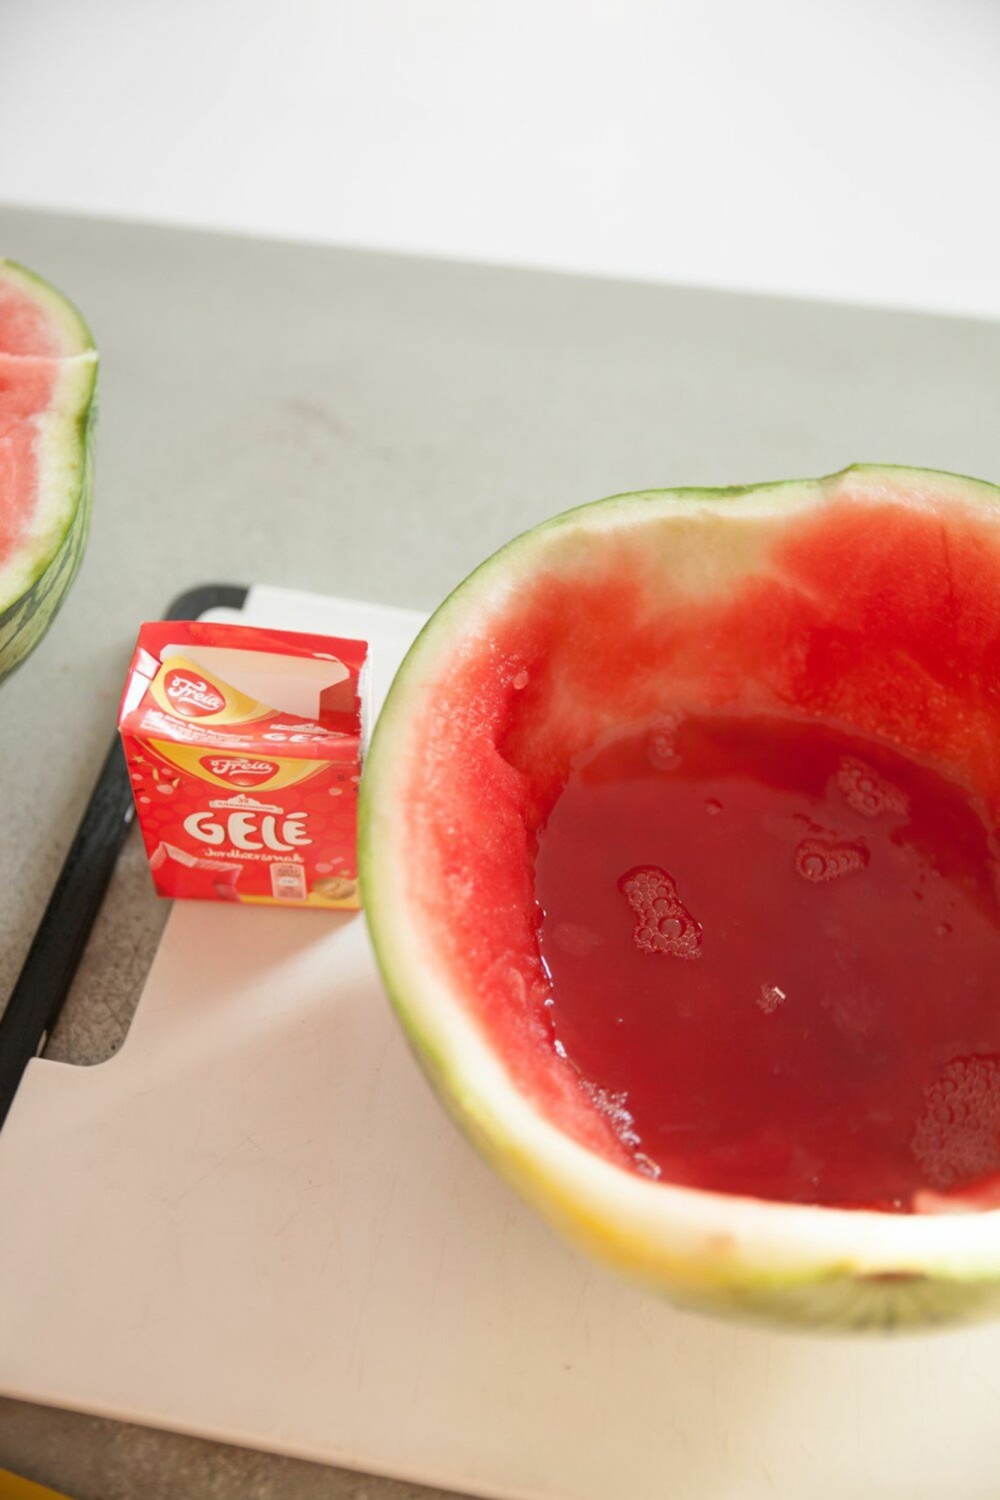 MELONSKÅL: Fyll et halv melonskall med gele (bruk dobbel mengde pulver), så får du en morsom måte å servere gele på!